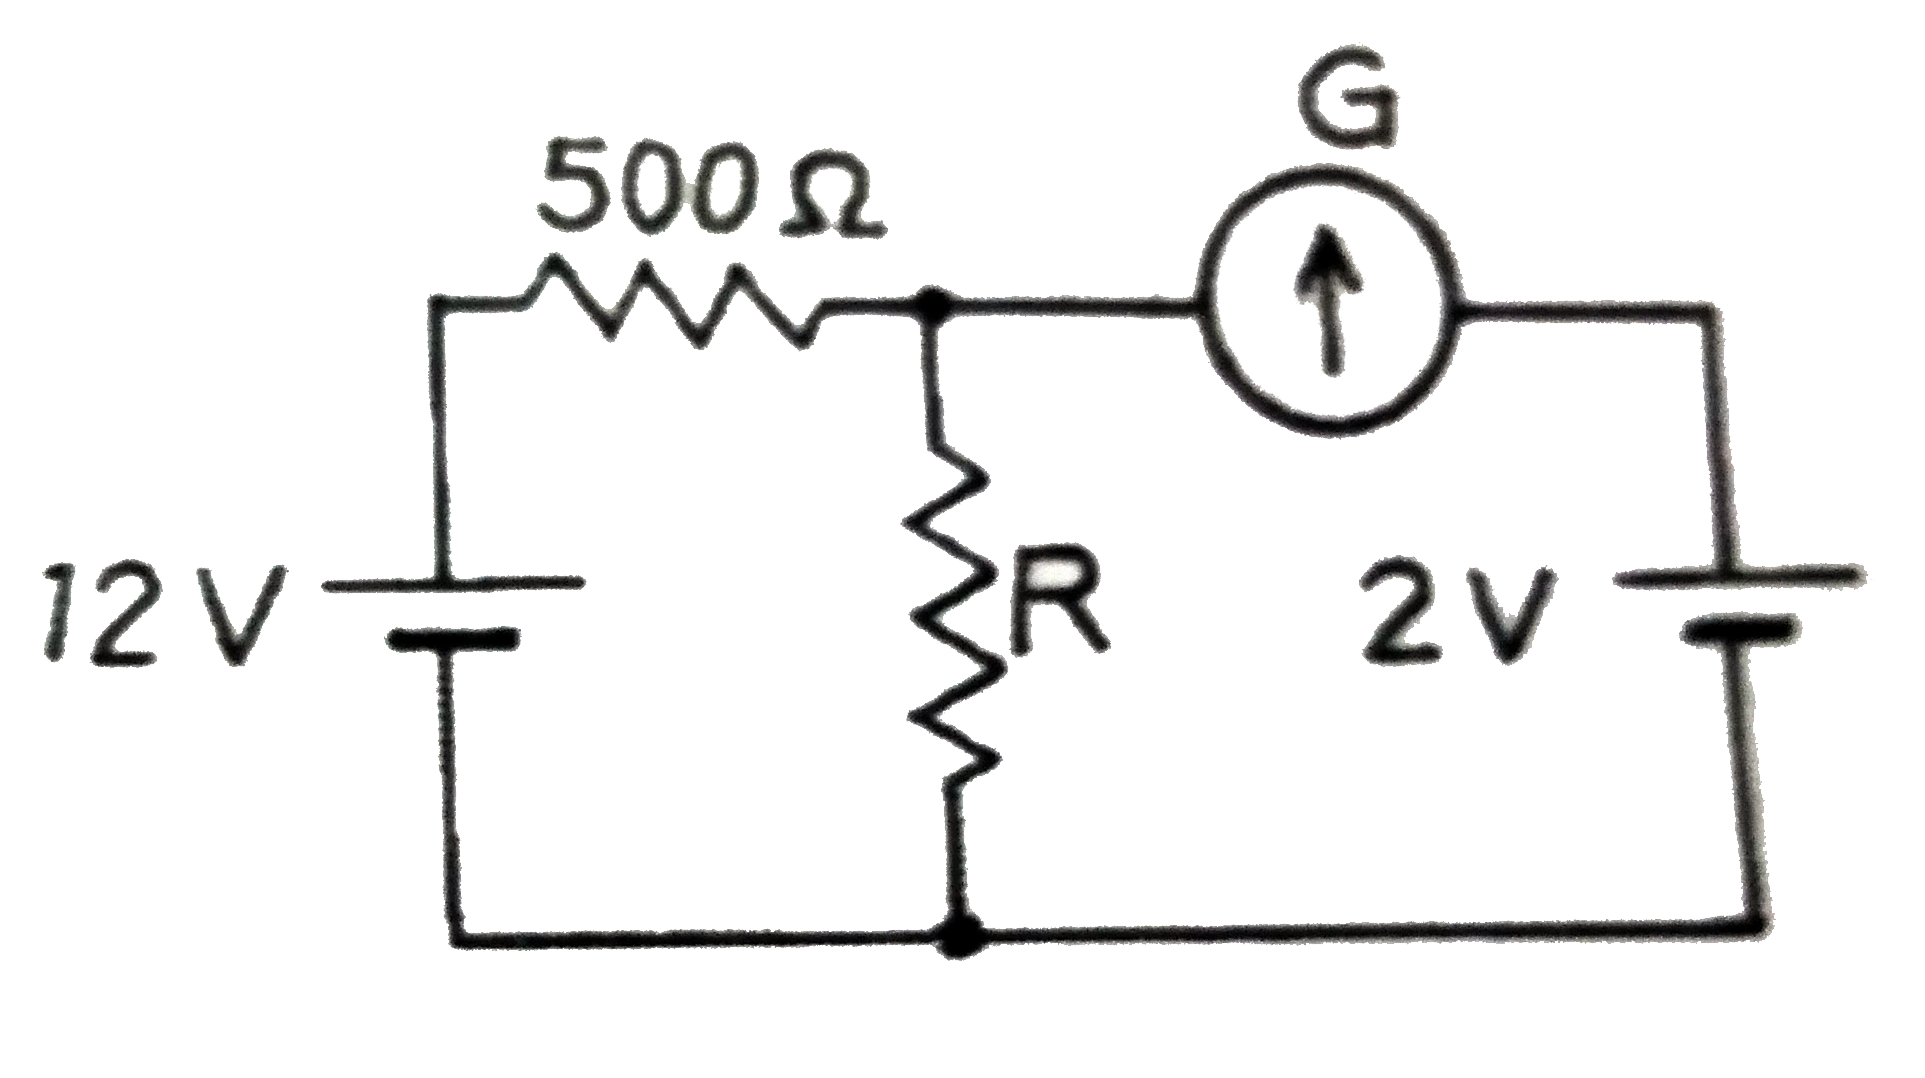 संलग्न परिपथ में धारामापी  G  का पाठ्यांक शून्य है । प्रतिरोध R का मान  ज्ञात कीजिए| 12V     बैटरी का आंतरिक प्रतिरोध  नगण्य है ।